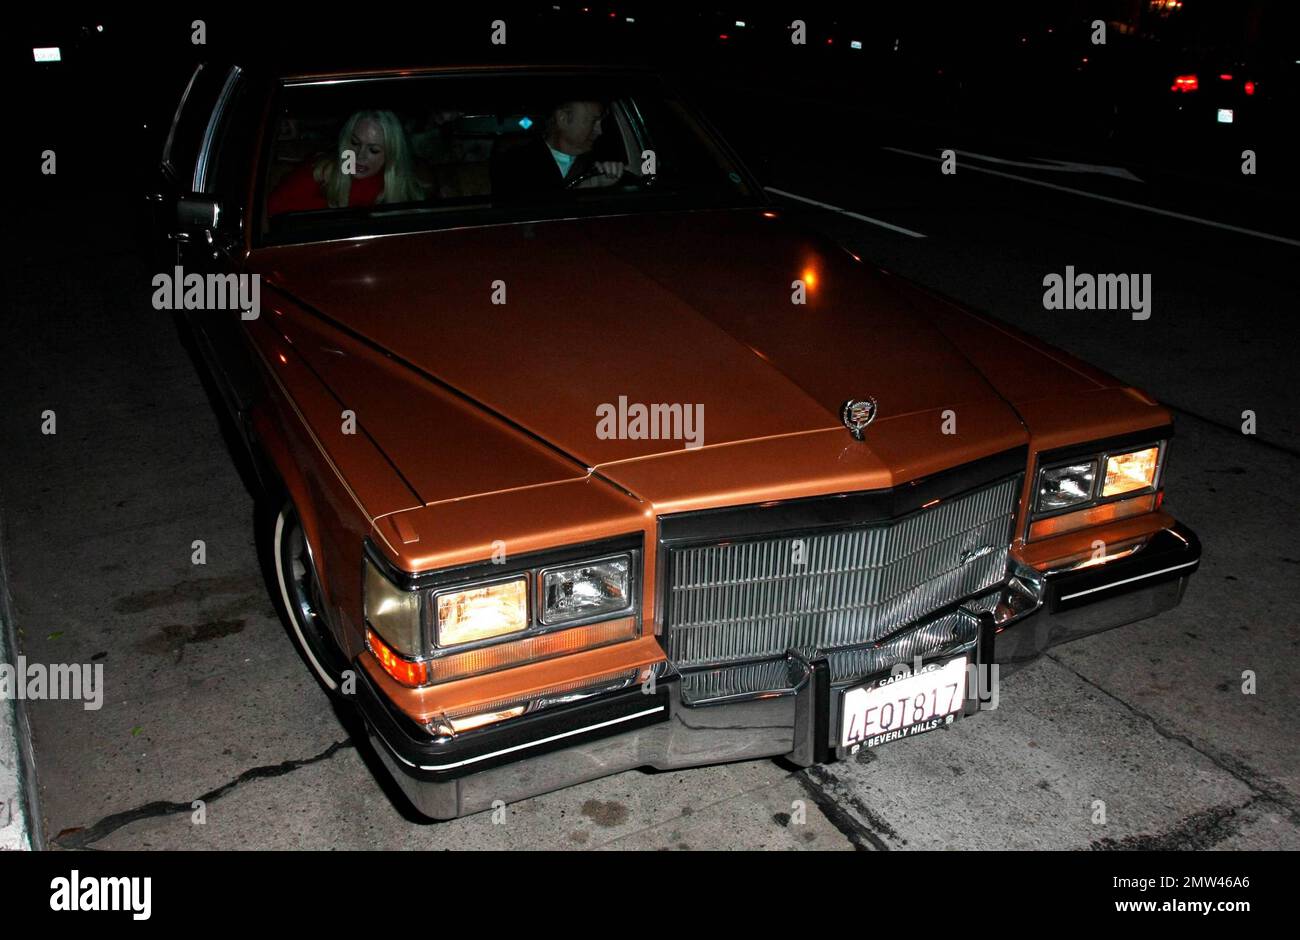 Yasmin Khan, fille de l'actrice Rita Hayworth, s'éloigne du restaurant Madeo dans une Cadillac brune possédée par sa mère. Los Angeles, Californie. 2/10/10. . Banque D'Images